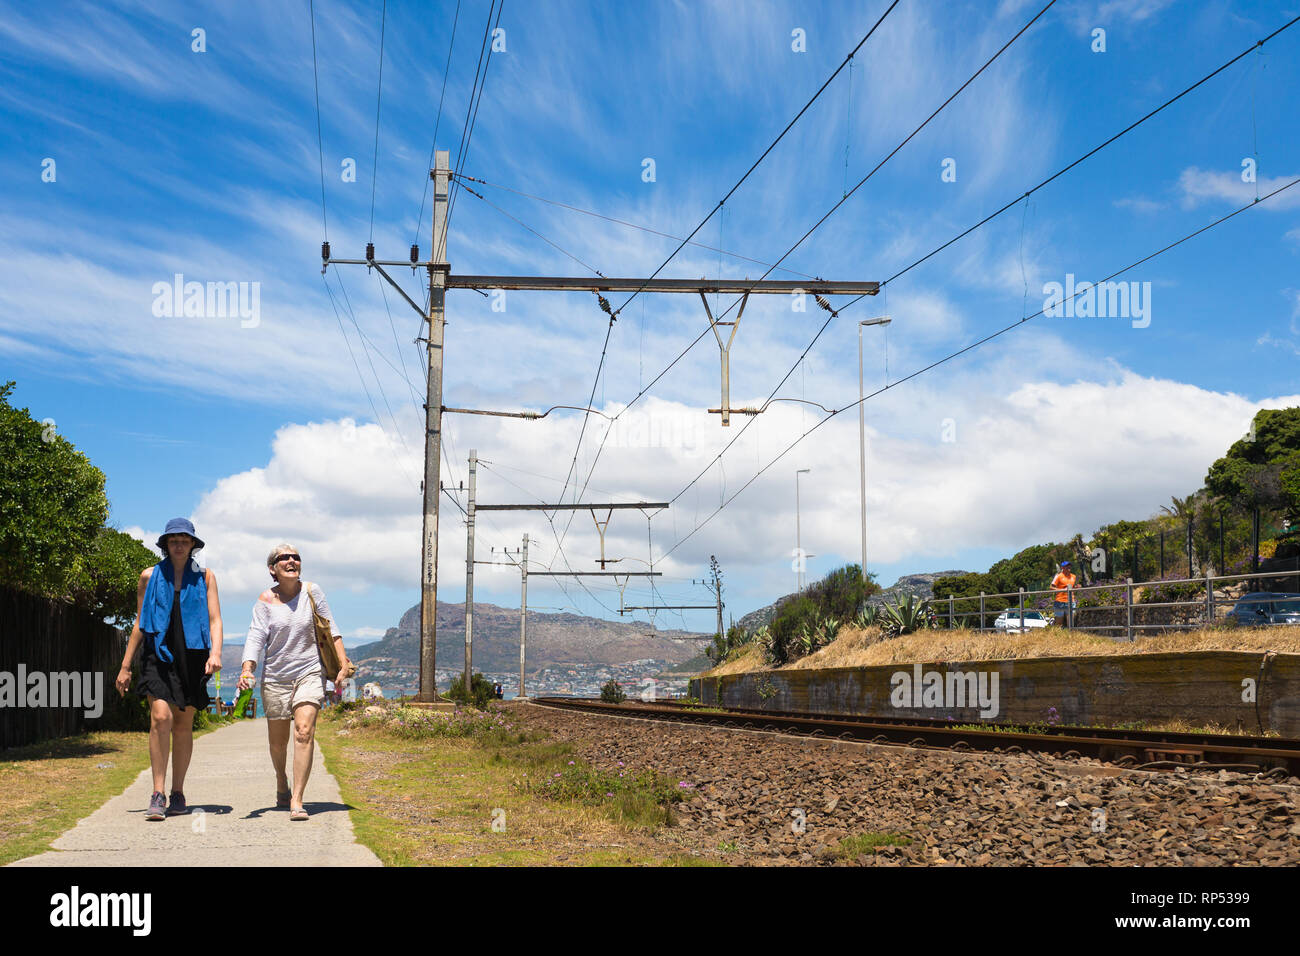 Küstenweg parallel zu einer Bahnlinie und zwei kaukasischen Frauen zu Fuß auf einem sonnigen Tag Sommer in Muizenberg, Kap, Südafrika Stockfoto